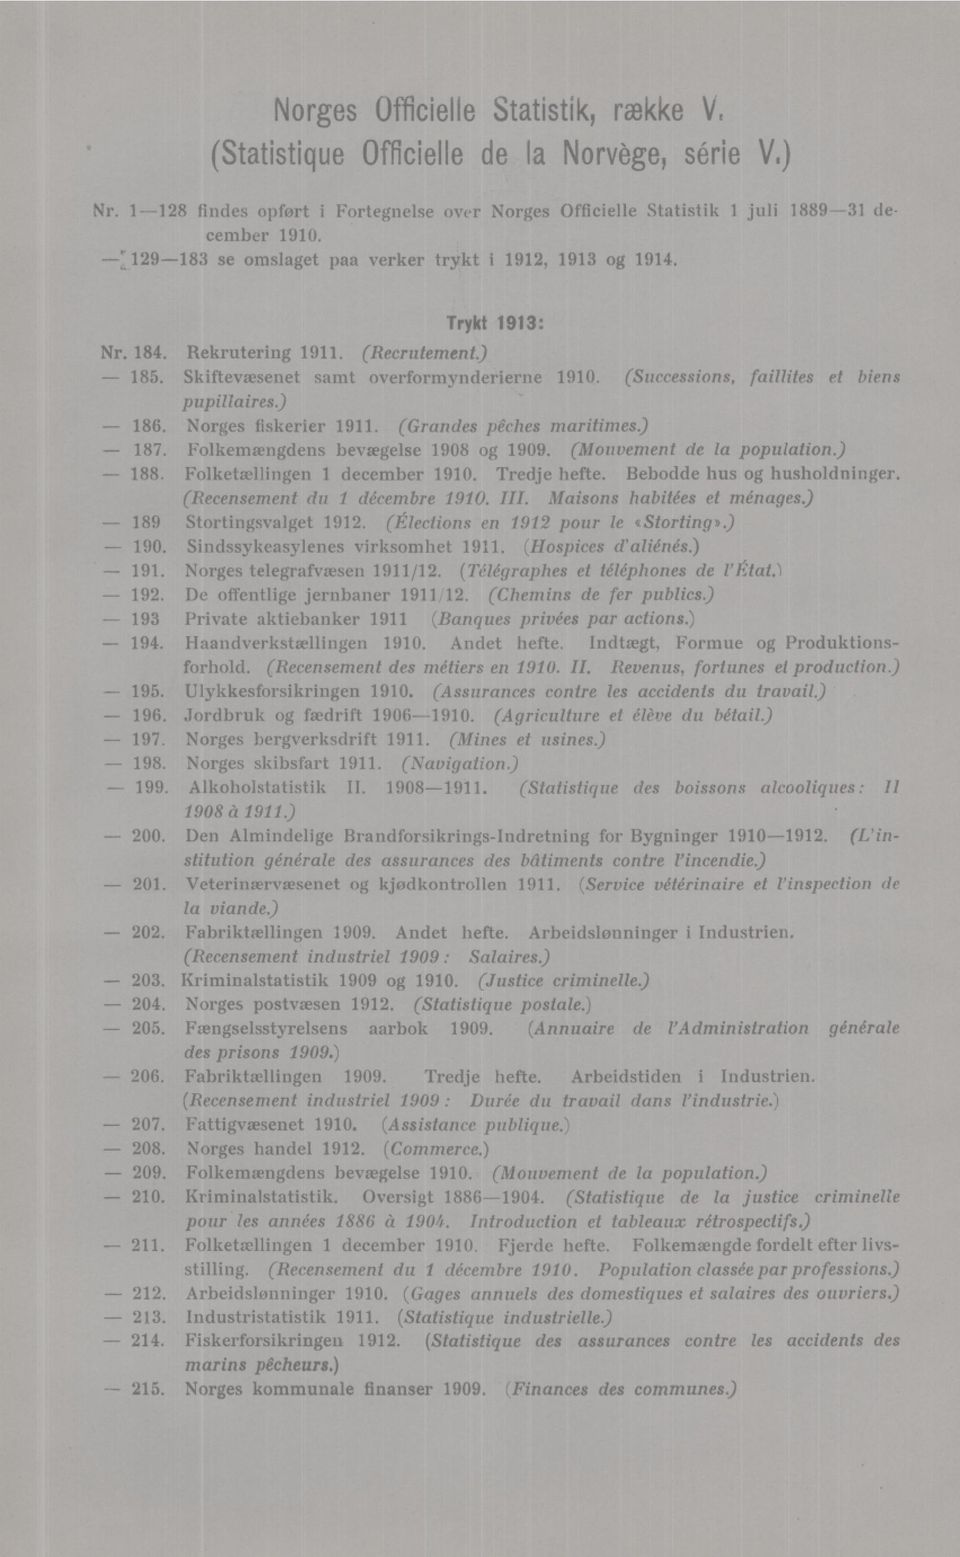 (Successions, faillites et biens pupillaires.) 186. Norges fiskerier 1911. (Grandes pêches maritimes) - 187. Folkemængdens bevægelse 1908 og 1909. (Mouvement de la population.) 188.